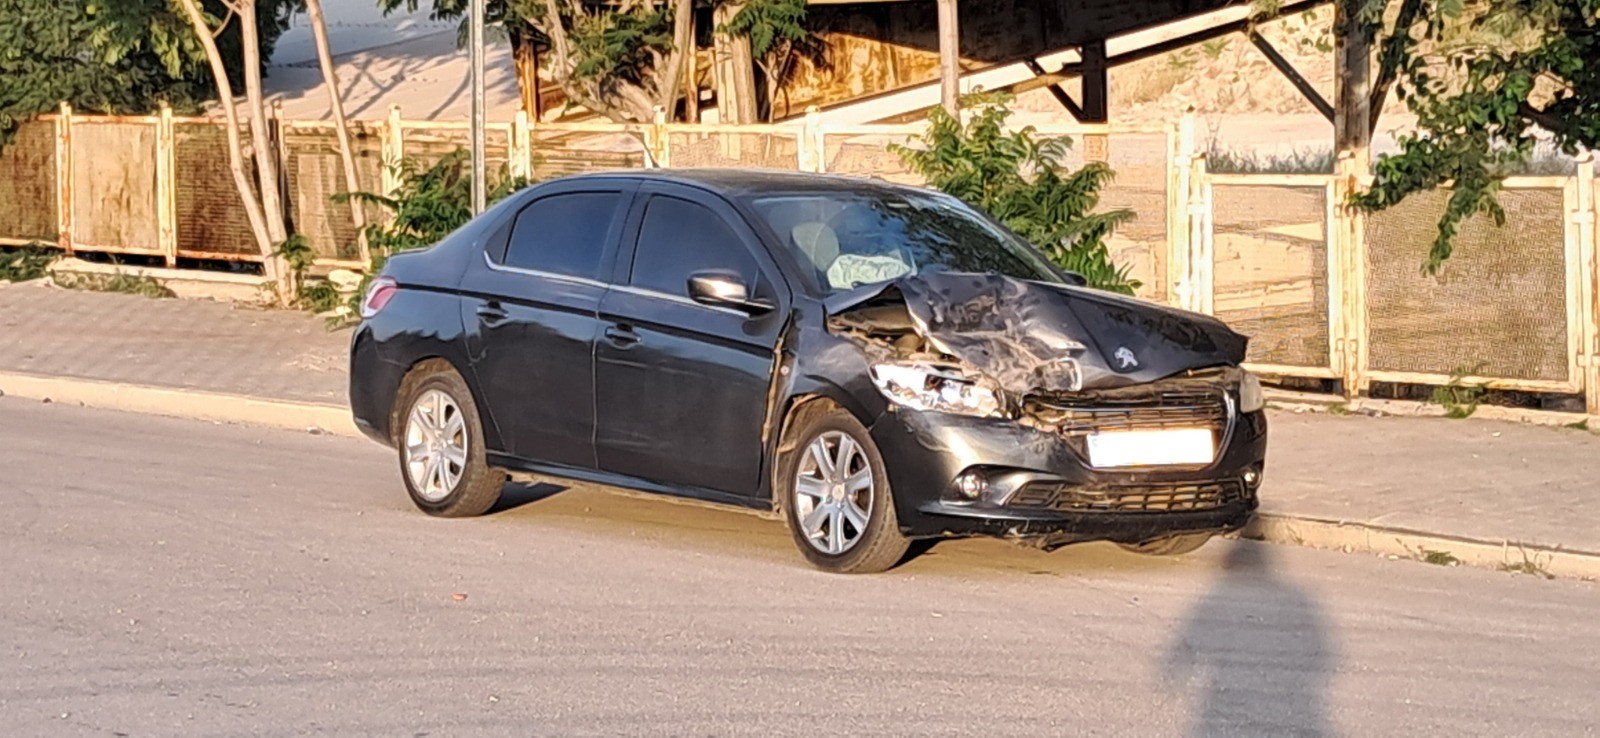 Karaman'da kaza '1 kişi yaralandı'